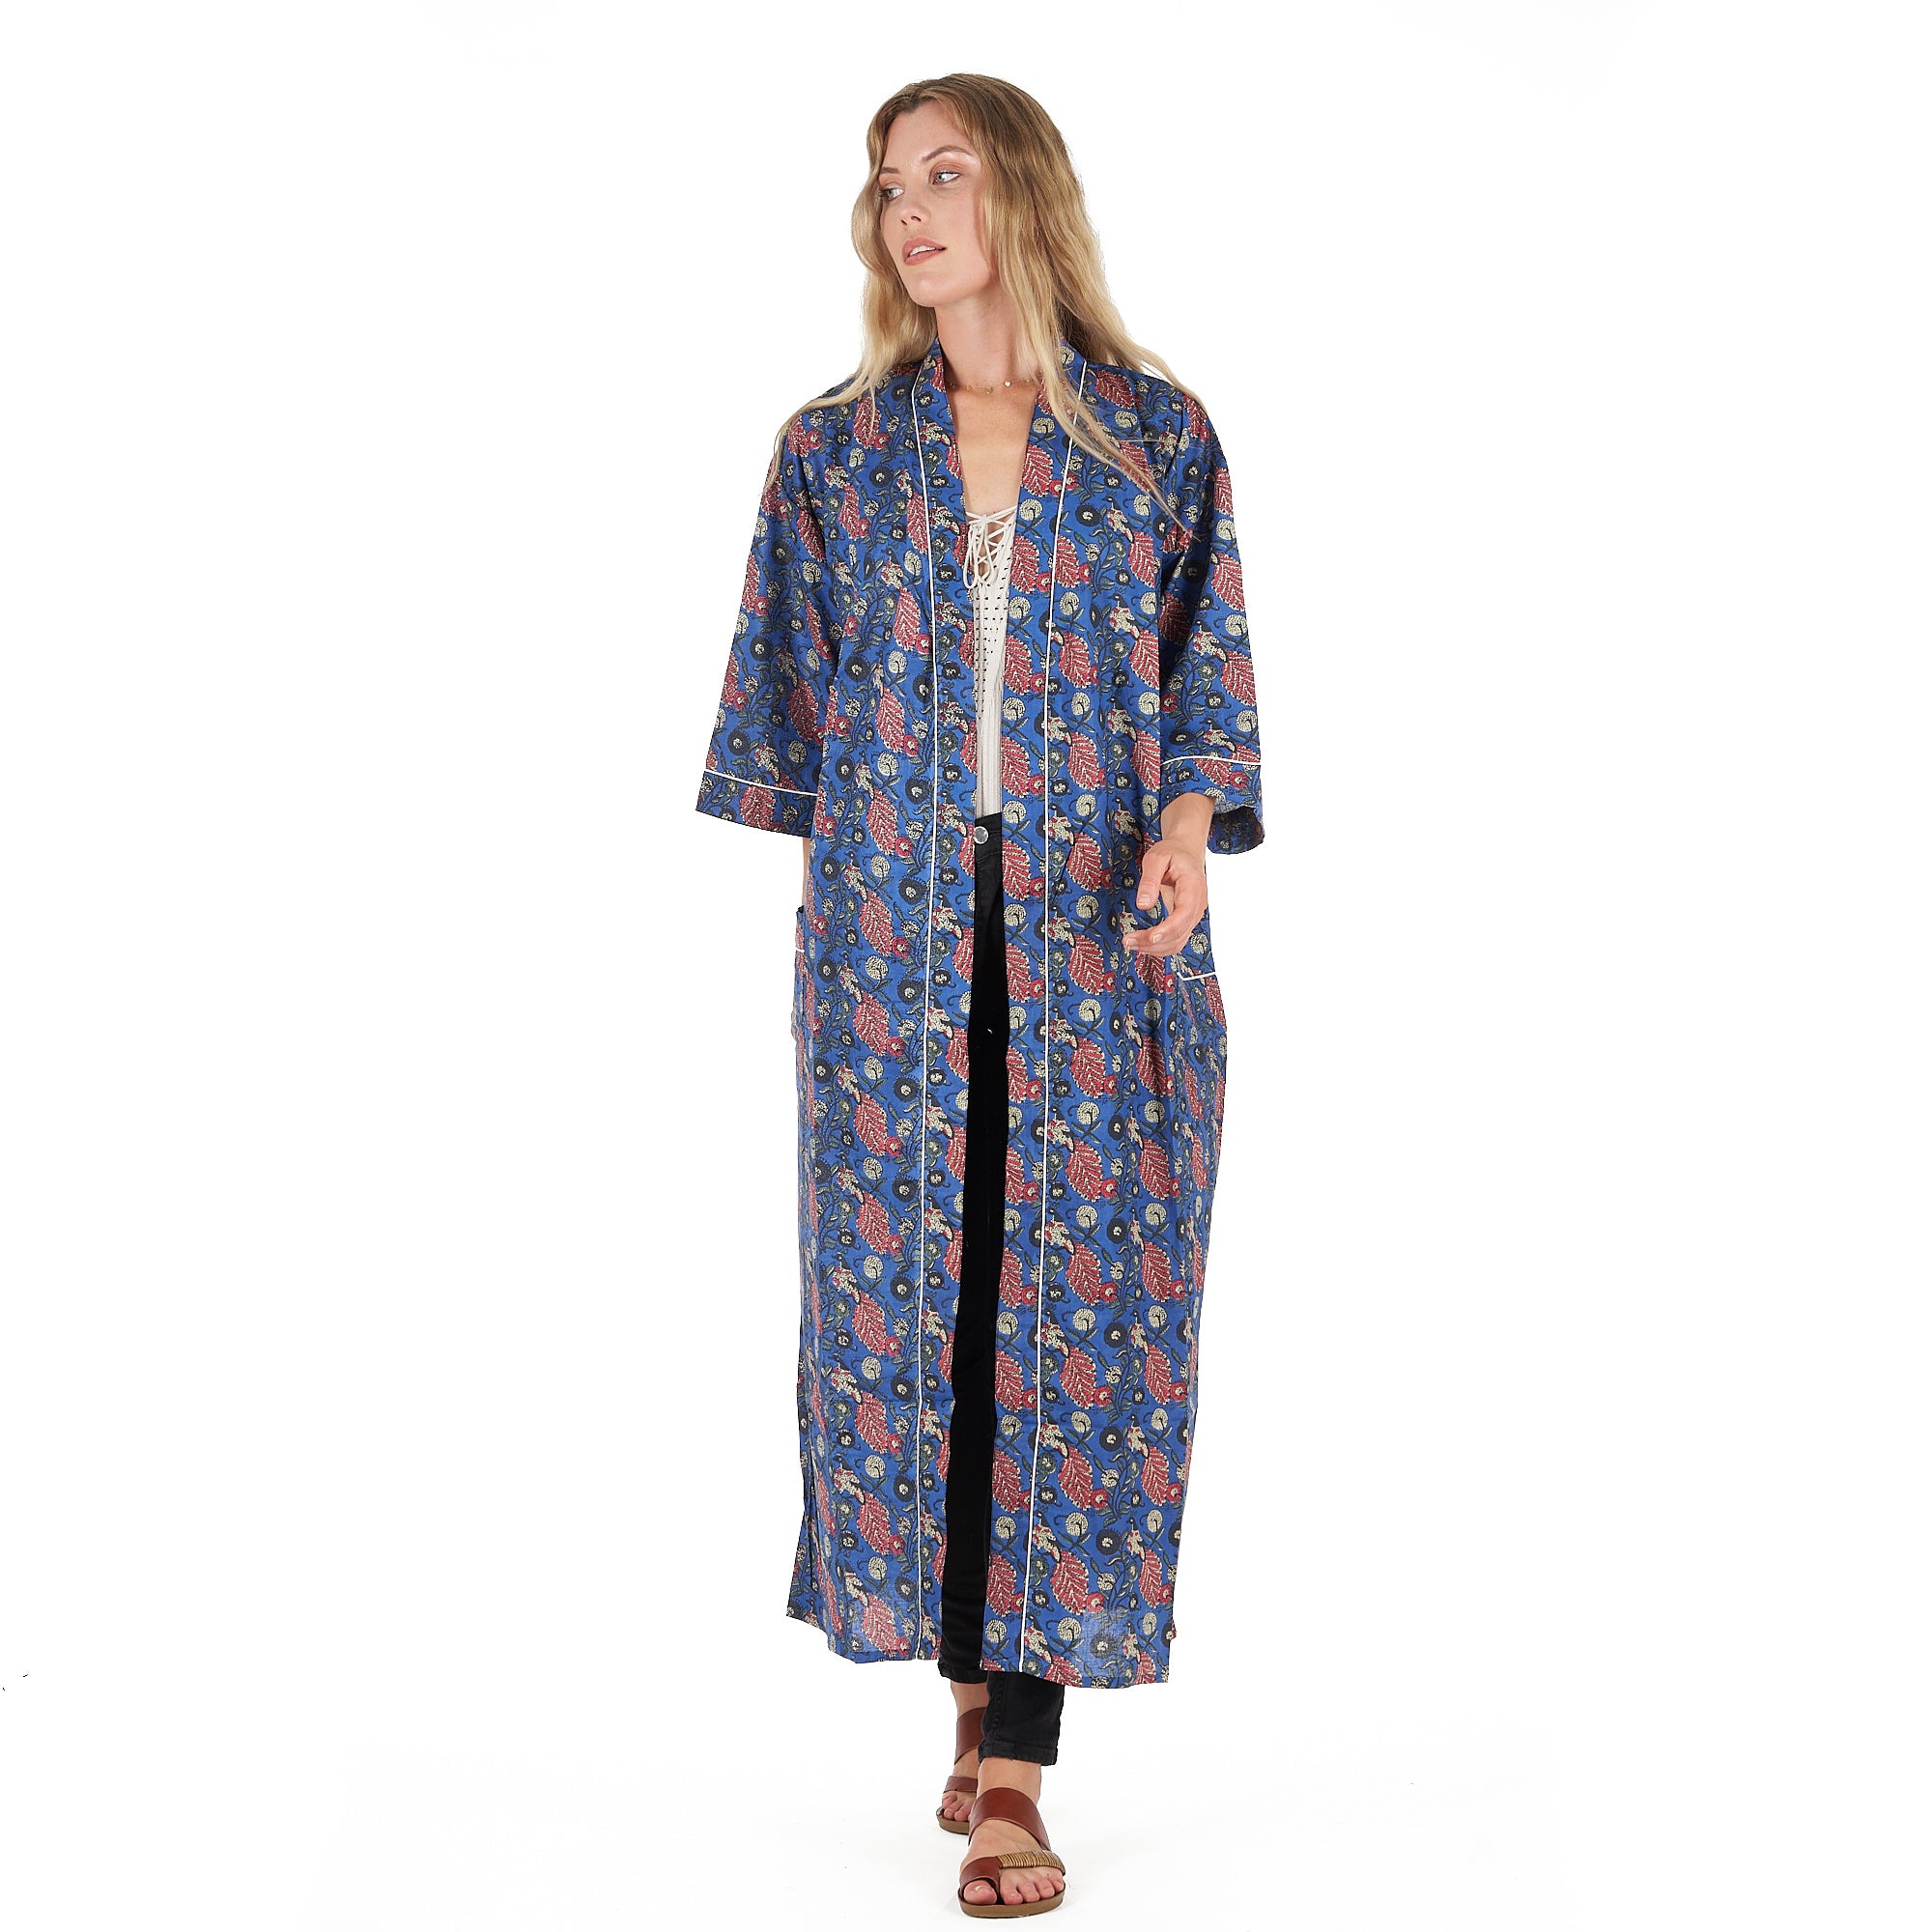 'Serene Style' 100% Cotton Kimono Robe